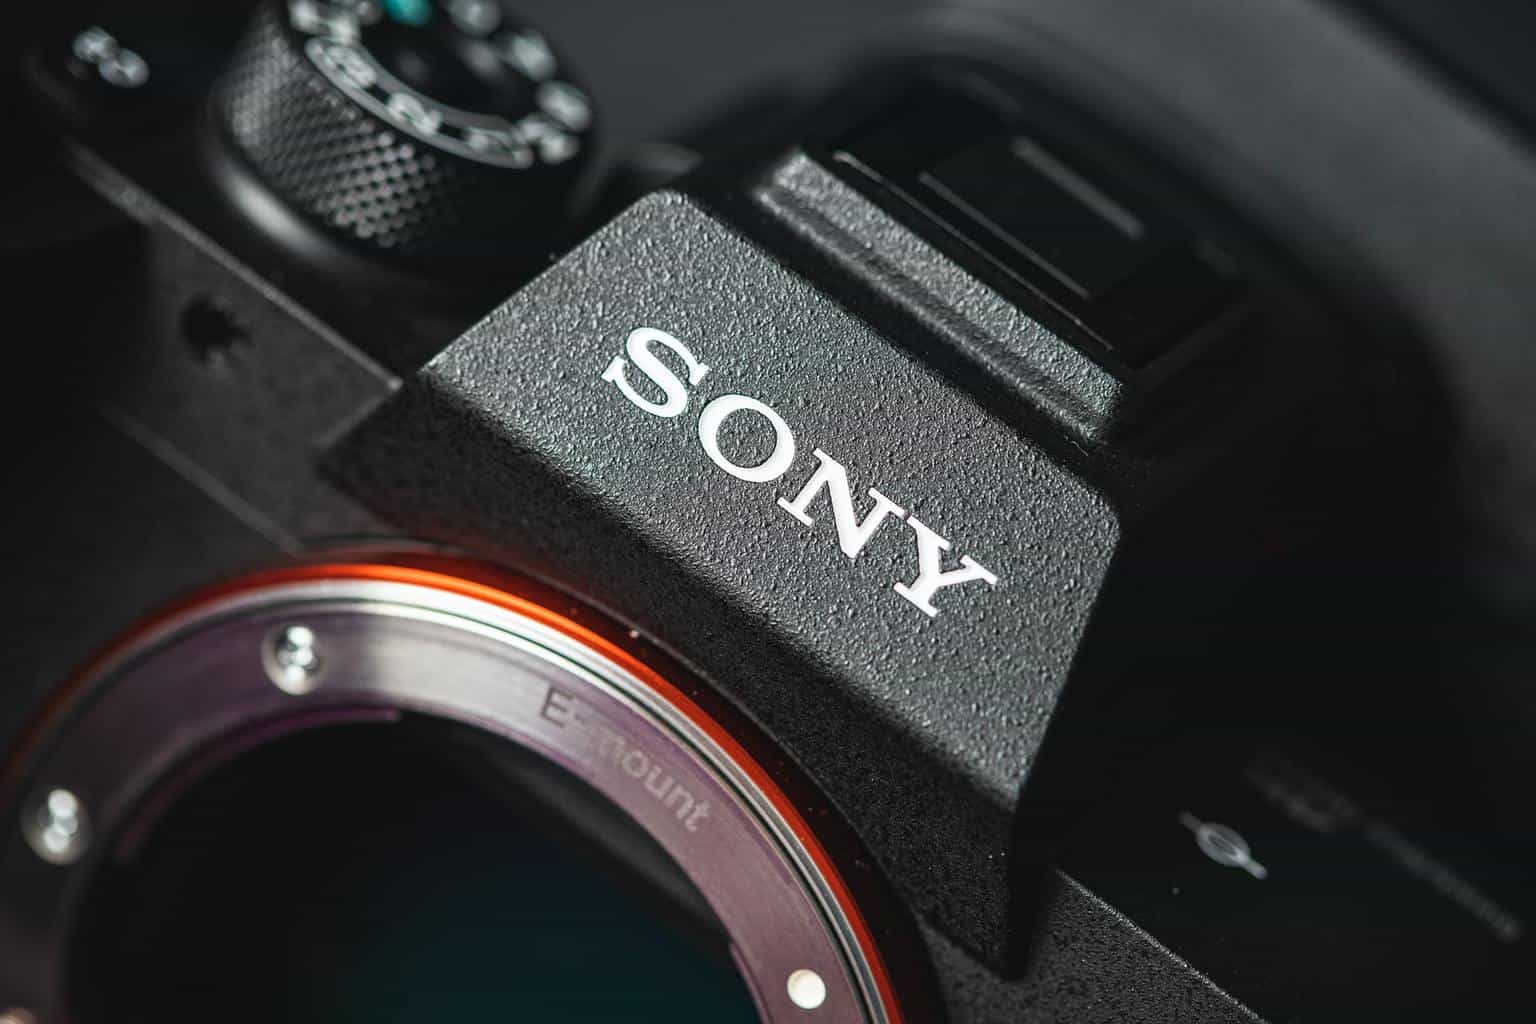 sony camera close up